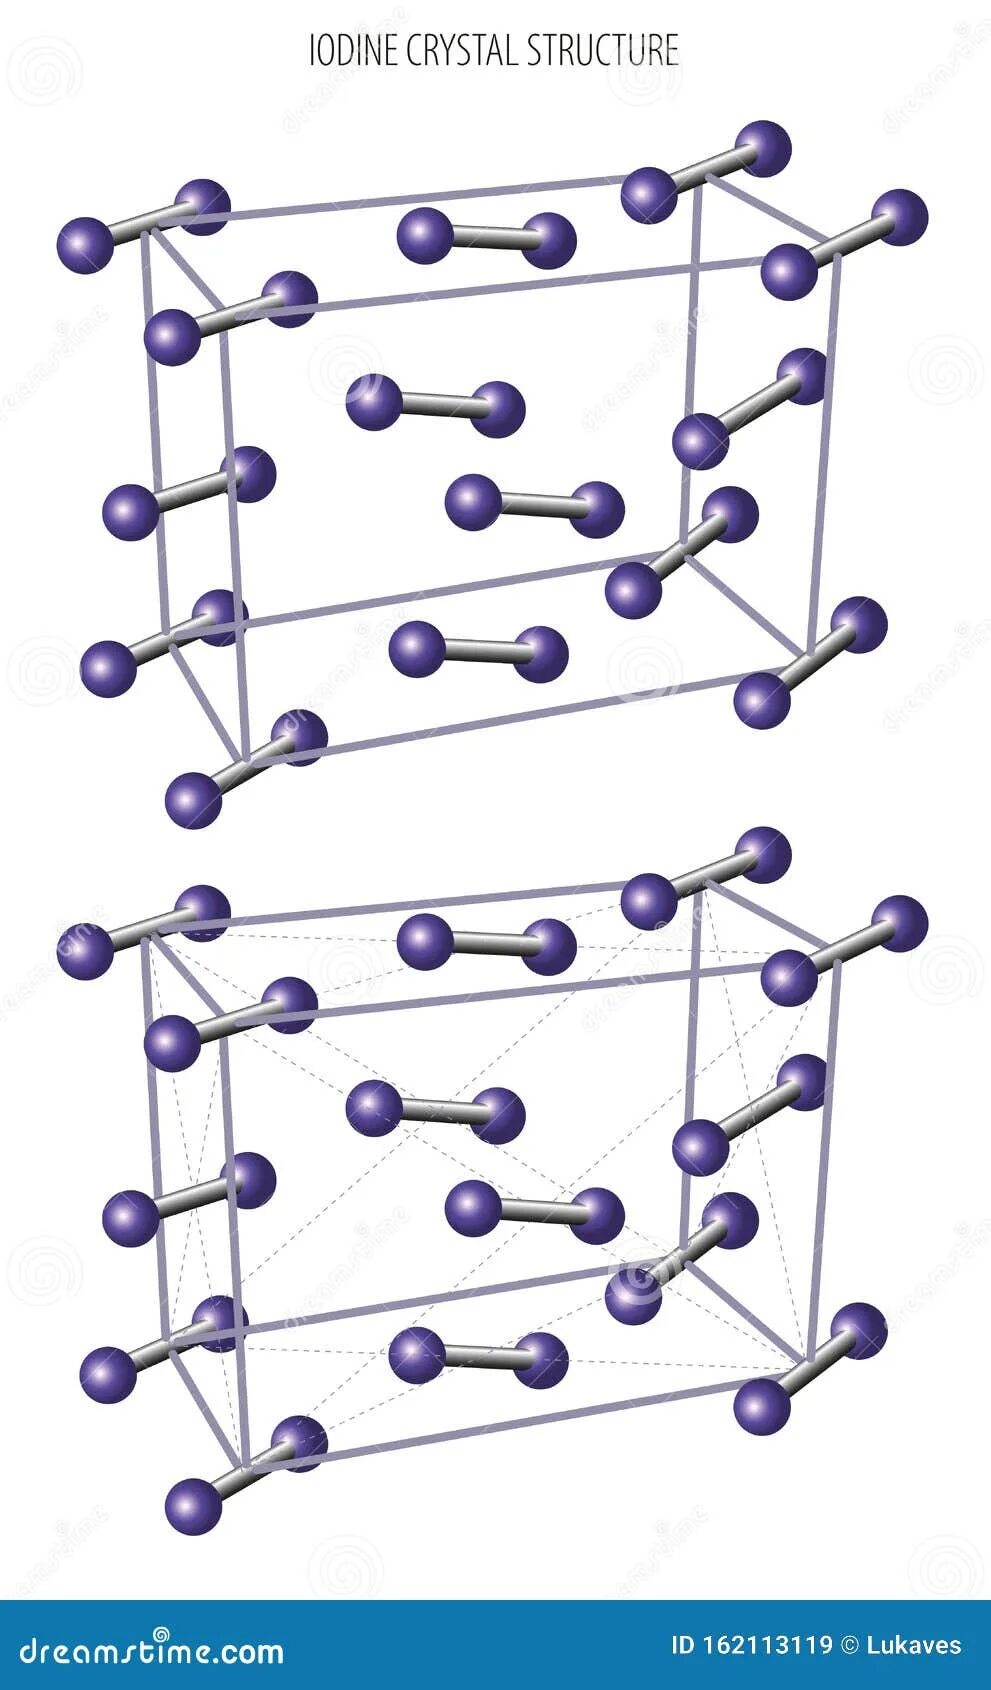 Йод кристаллическая решетка. Строение кристаллической решетки йода. Кристаллическая структура йода. Кристаллическая структура иода. Кристаллическая решетка йода.